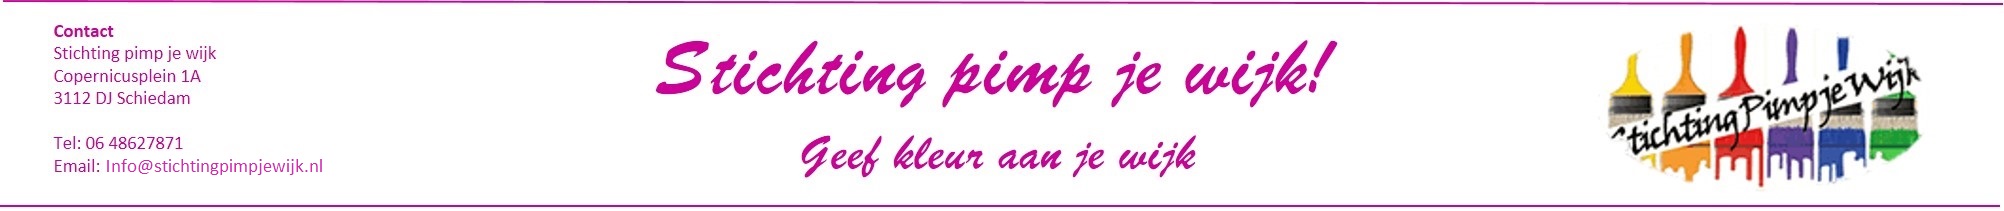 www.stichtingpimpjewijk.nl